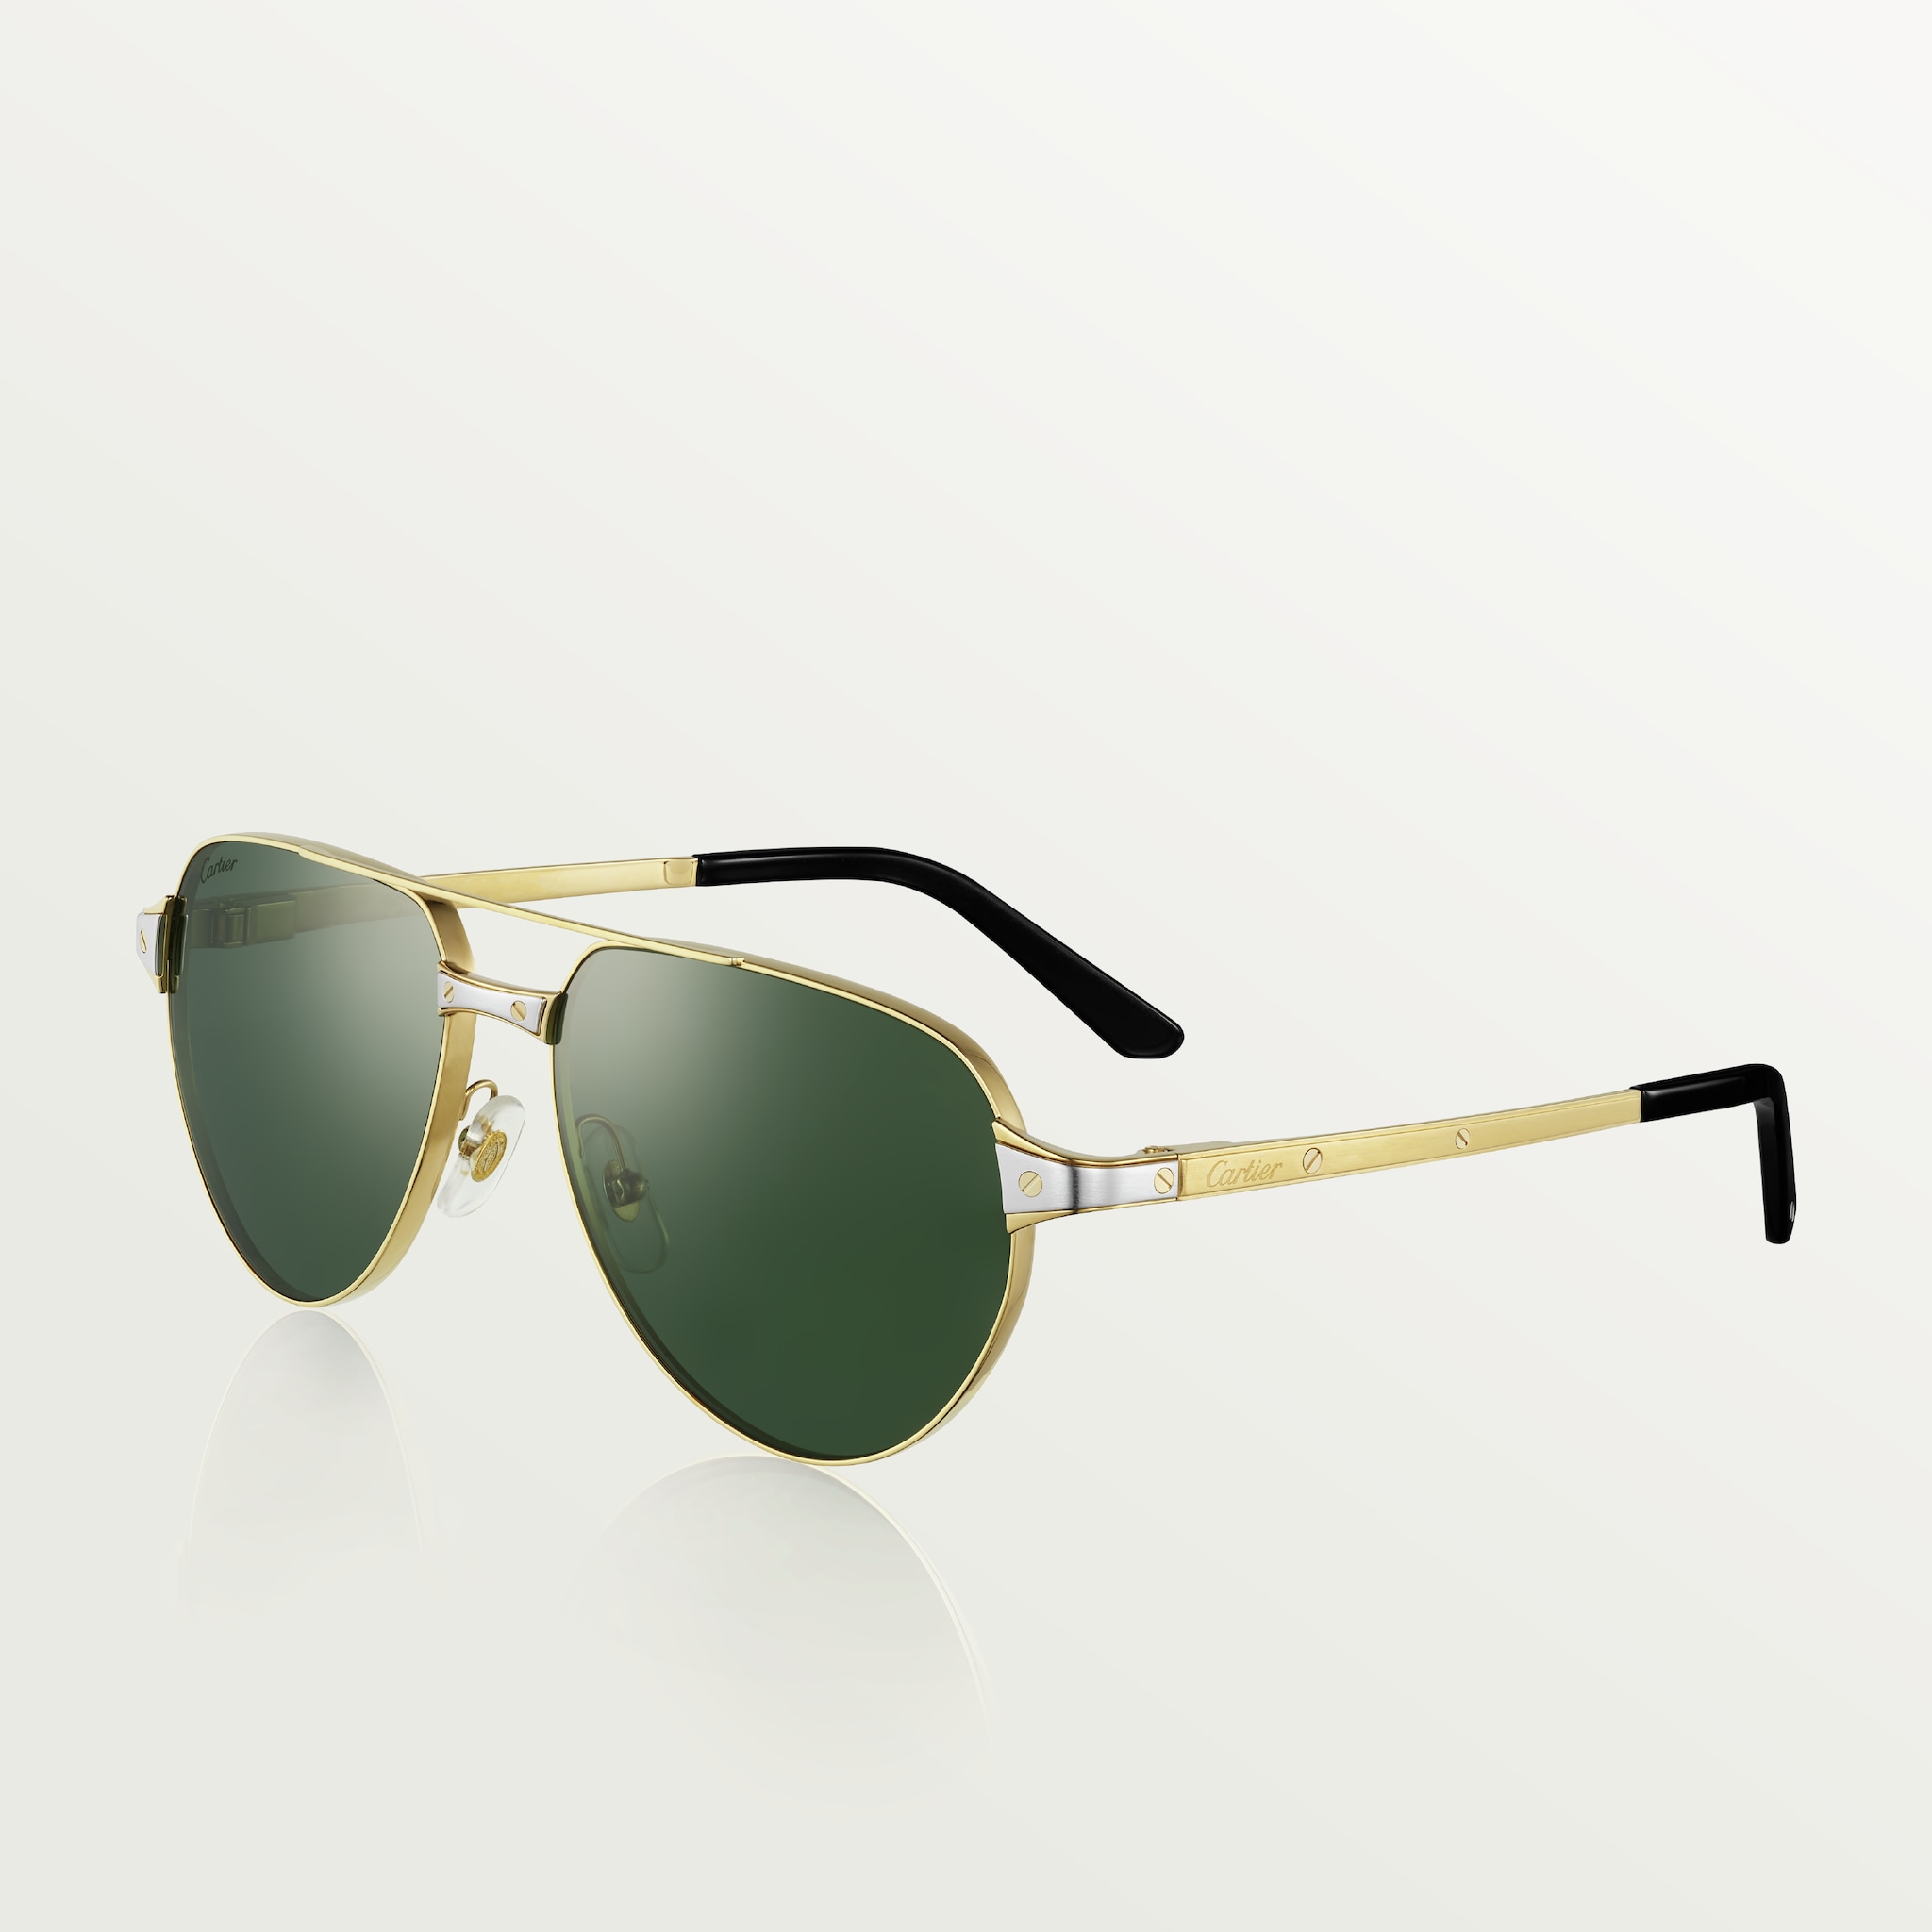 Gafas de sol Santos de CartierMetal acabado dorado liso y cepillado, lentes verdes